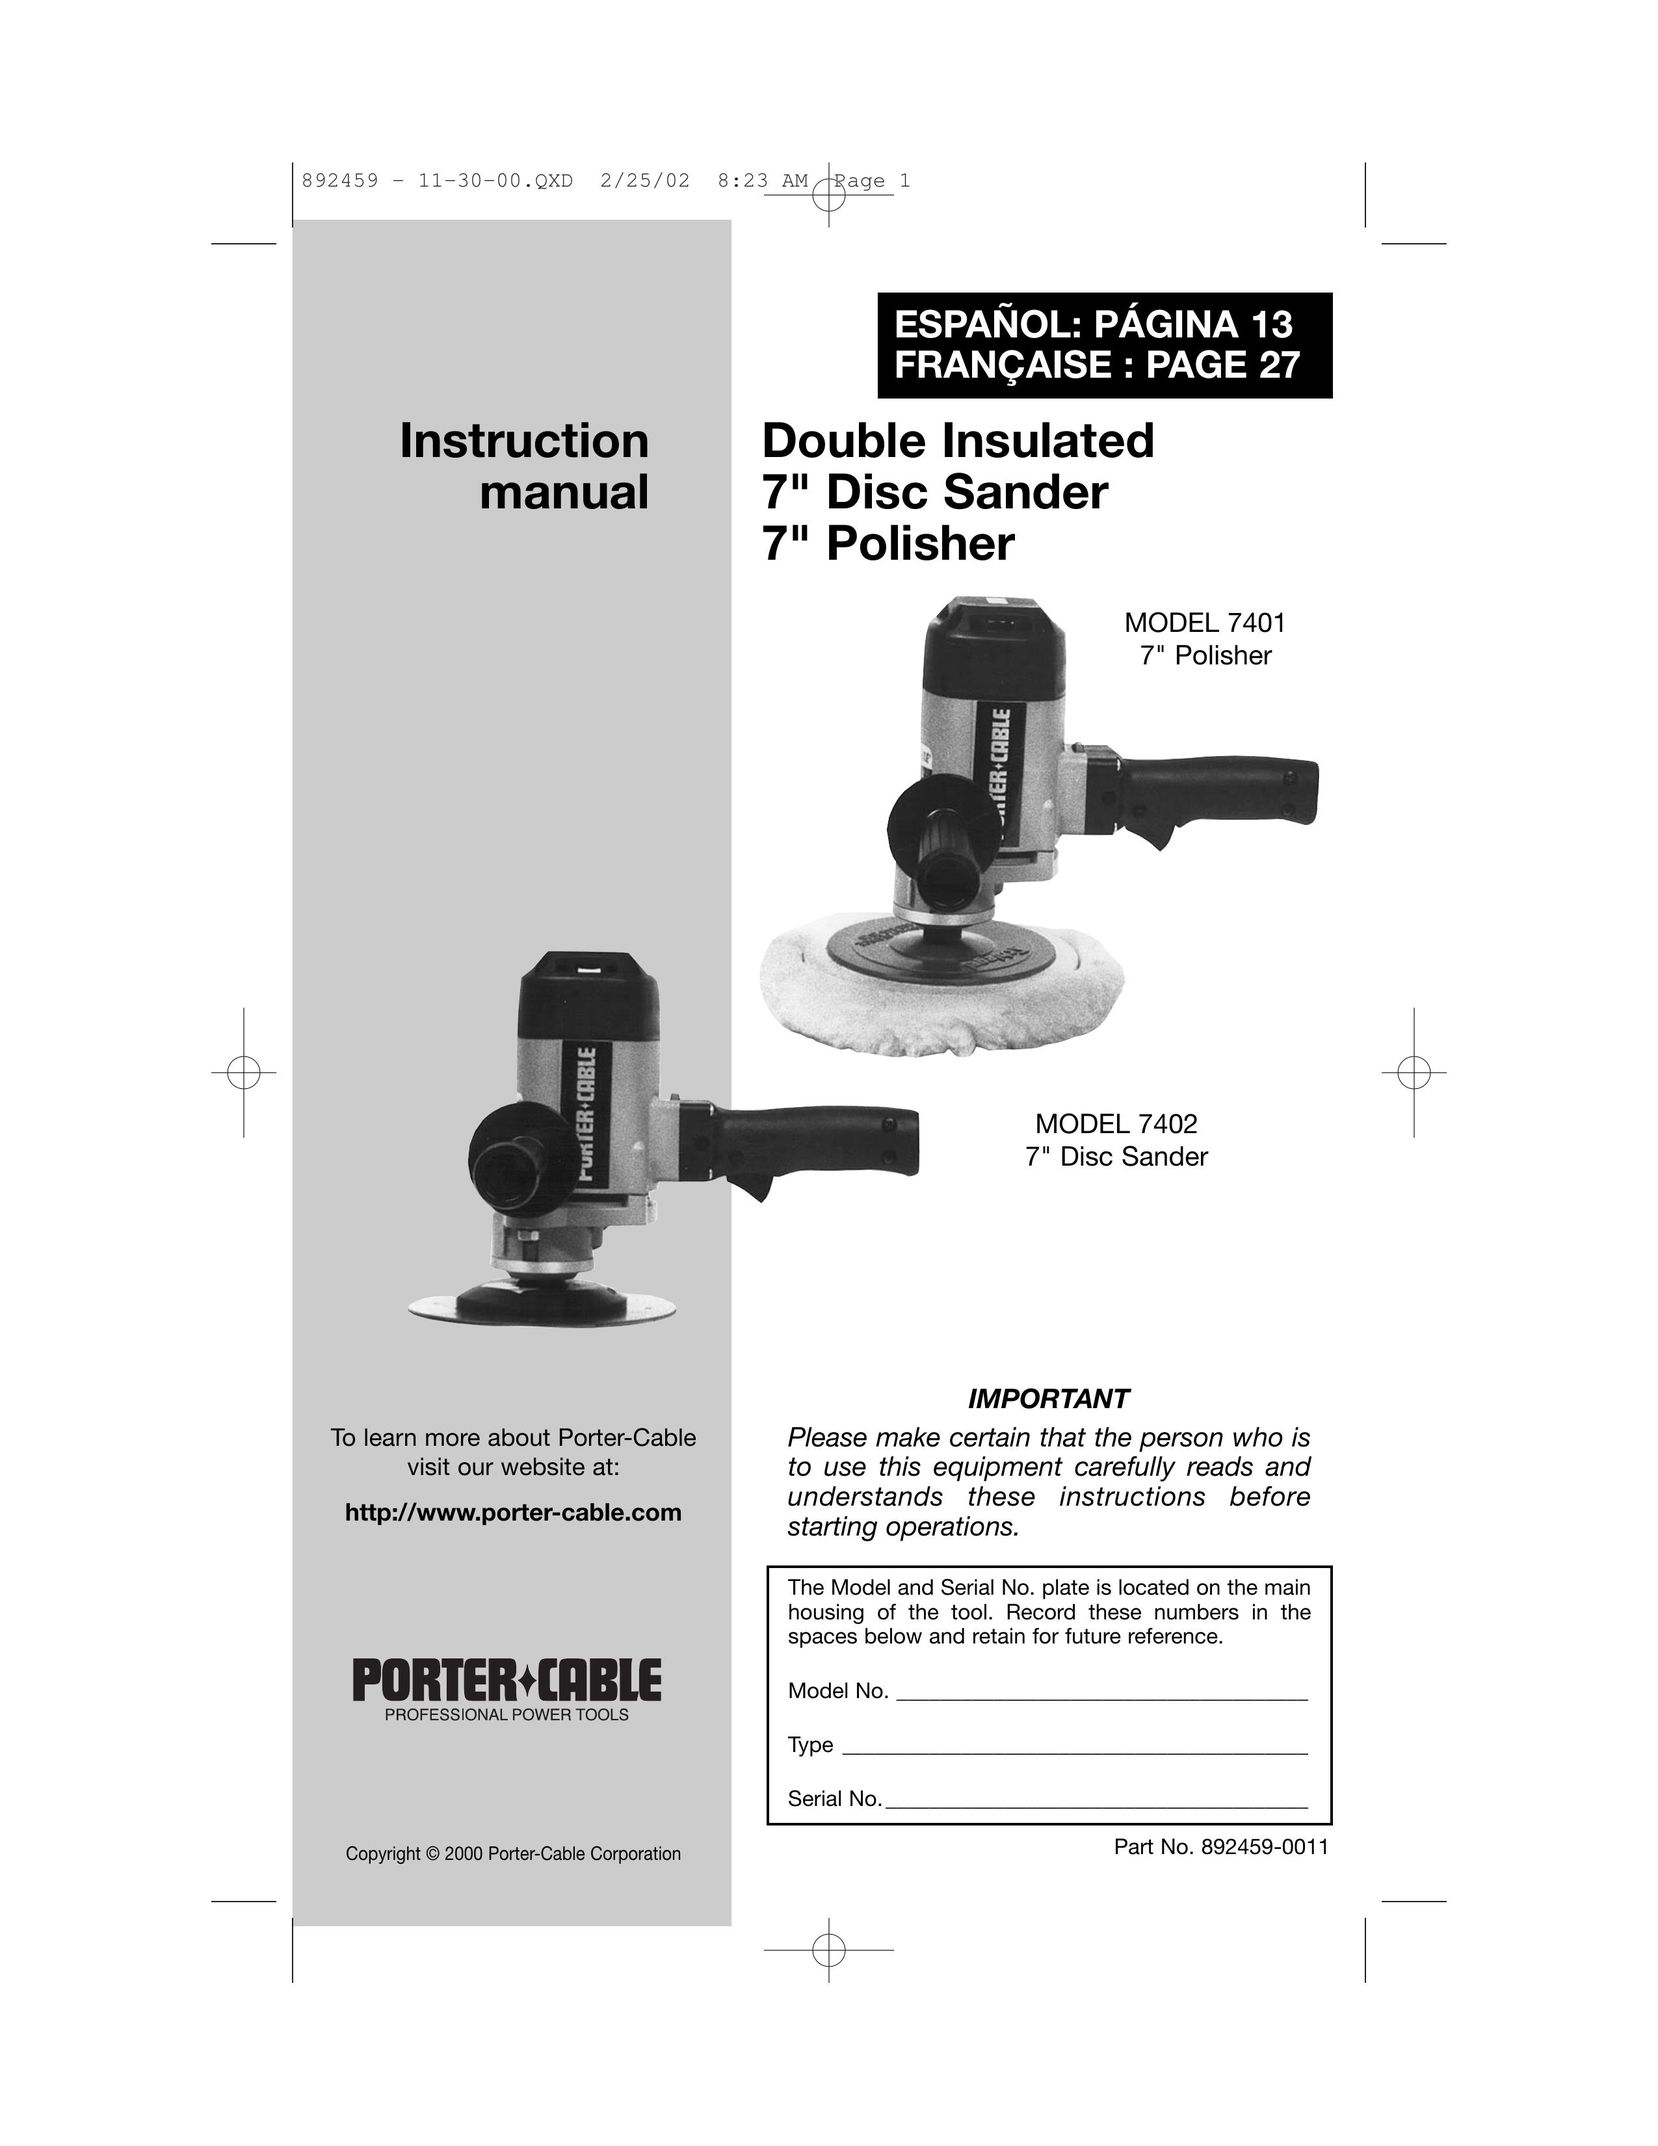 Porter-Cable 892459-0011 Sander User Manual